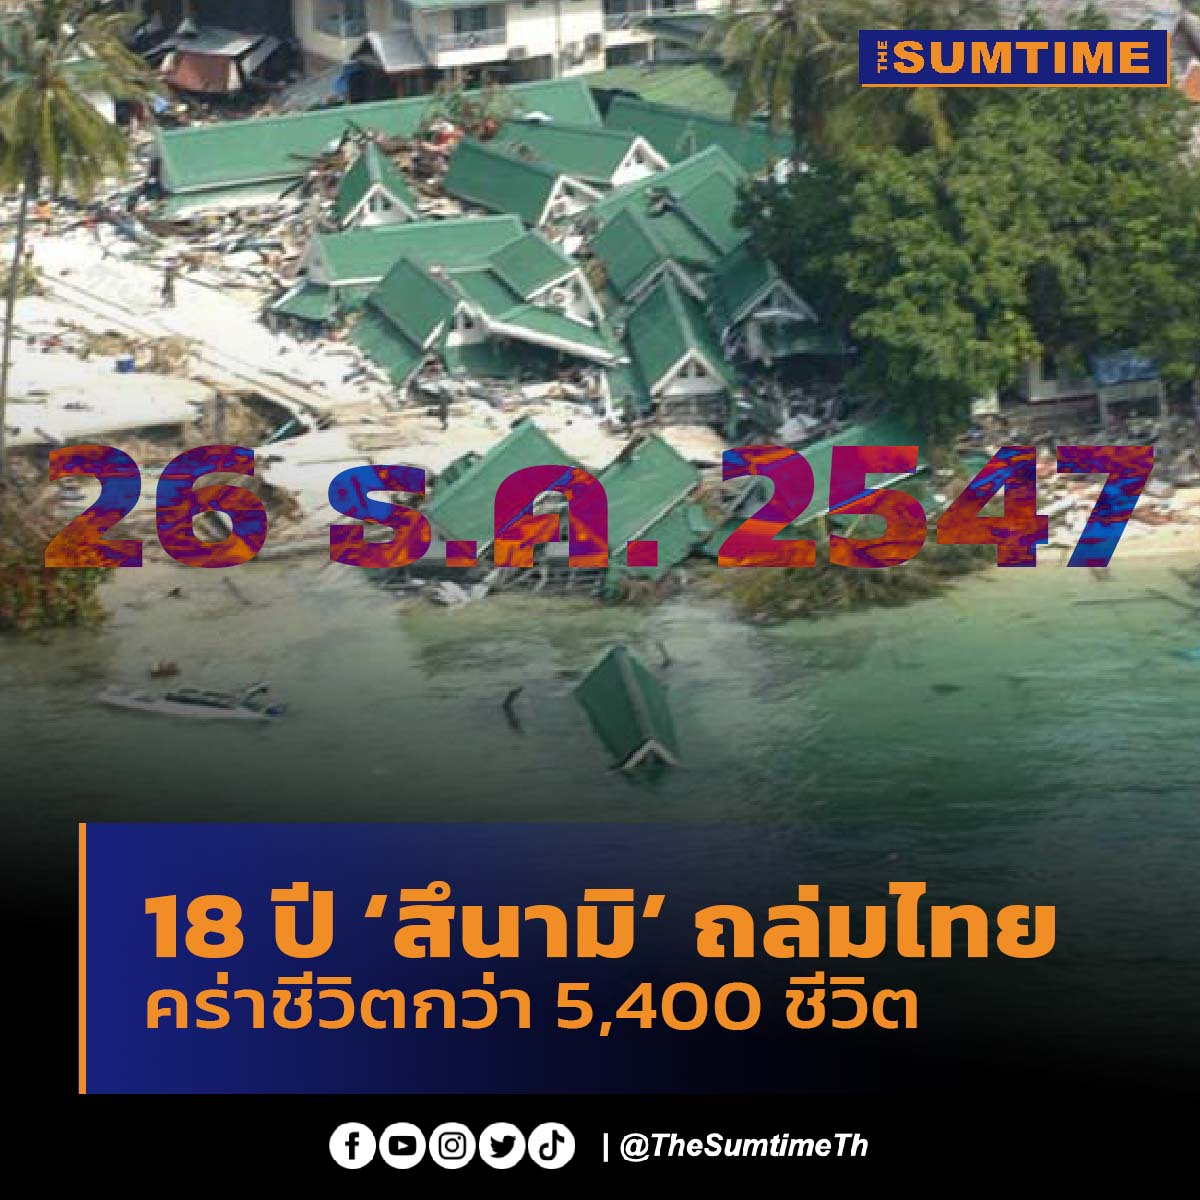 26 ธ.ค. 2547 เกิดจาก #แผ่นดินไหว อย่างรุนแรงโดยมีจุดศูนย์กลางบริเวณ #เกาะสุมาตรา ประเทศอินโดนีเซีย โดยได้เกิดคลึ่นยักษ์ 'สึนามิ' ส่งผลกระทบถึงประเทศไทยใน 6 จังหวัดภาคใต้ มีผู้เสียชีวิตกว่า 5,400 ราย บาดเจ็บ 8,000 ราย และมีผู้สูญหายอีกมาก

#สึนามิ #ครบรอบ #thesumtimeth #thesumtime